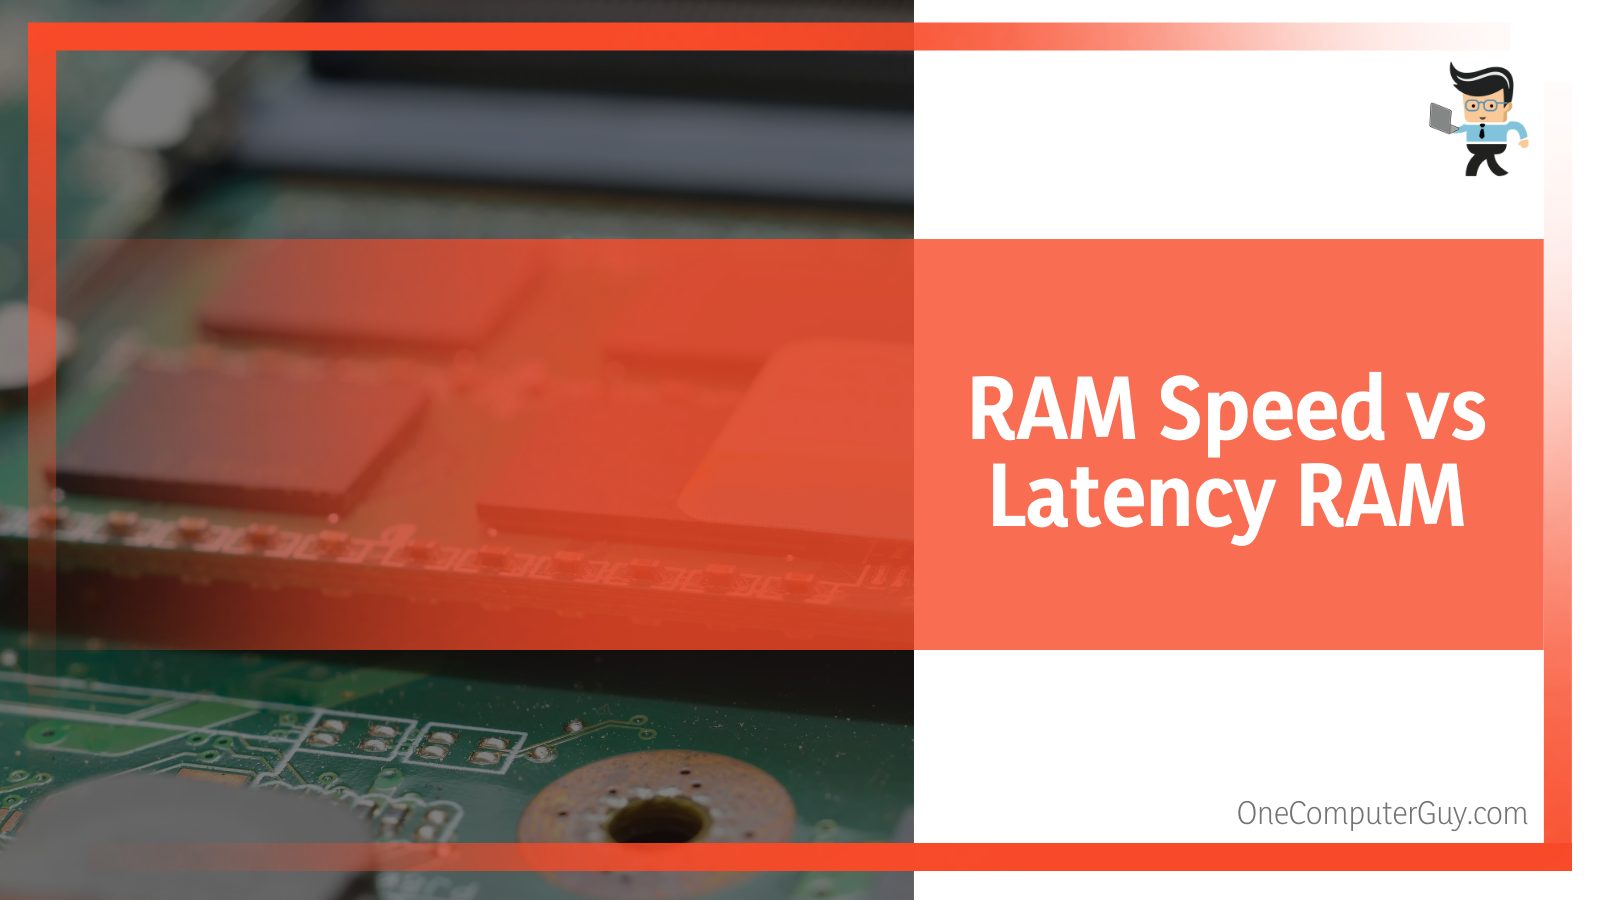 RAM Speed vs Latency RAM